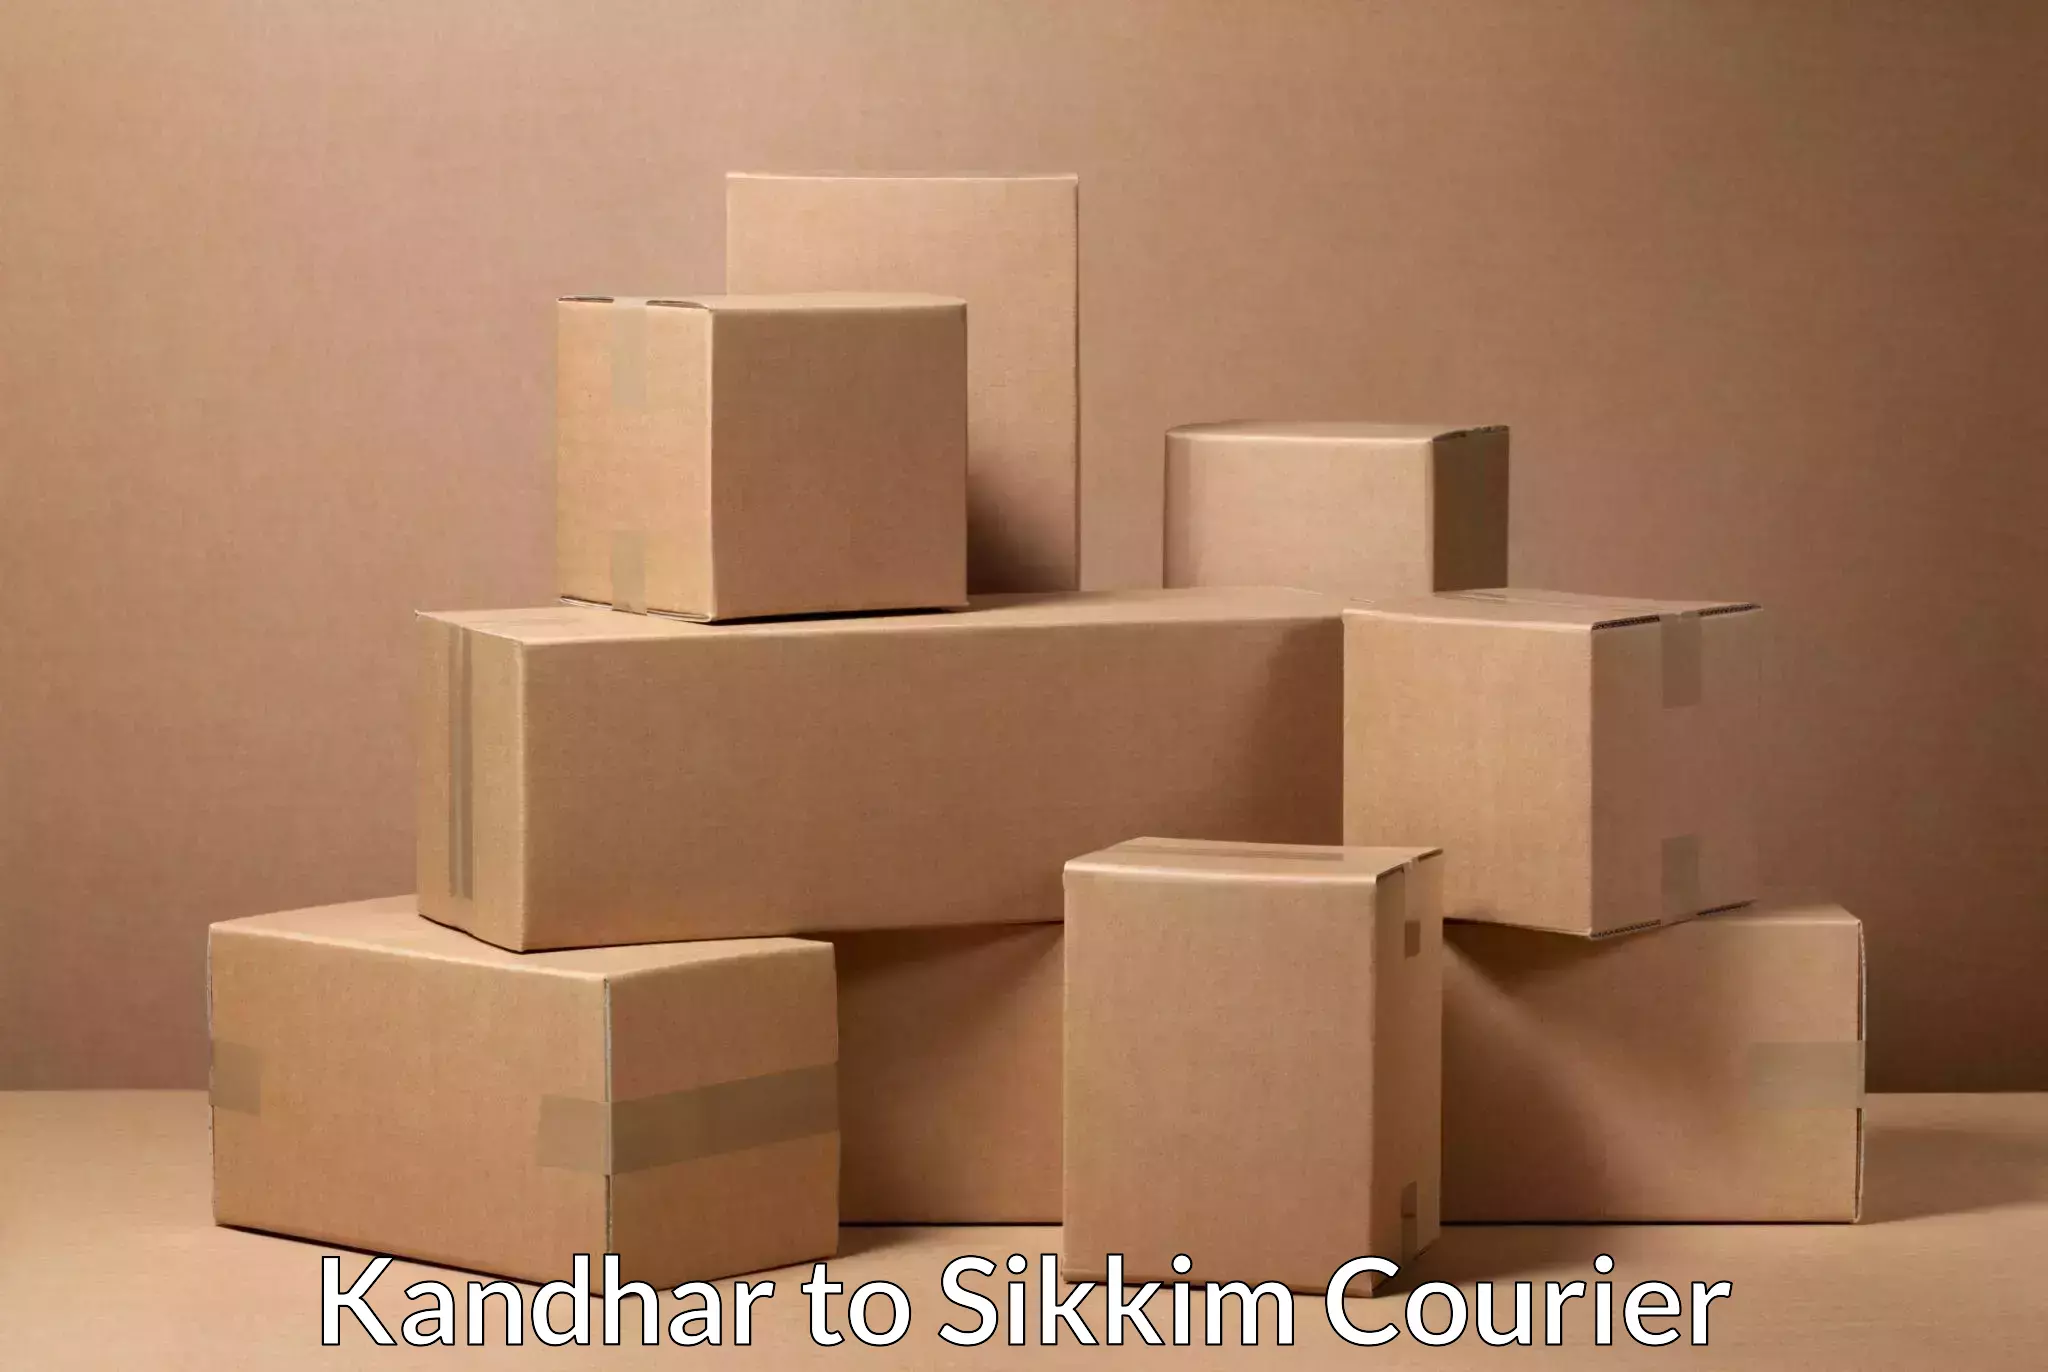 Nationwide shipping coverage Kandhar to Singtam